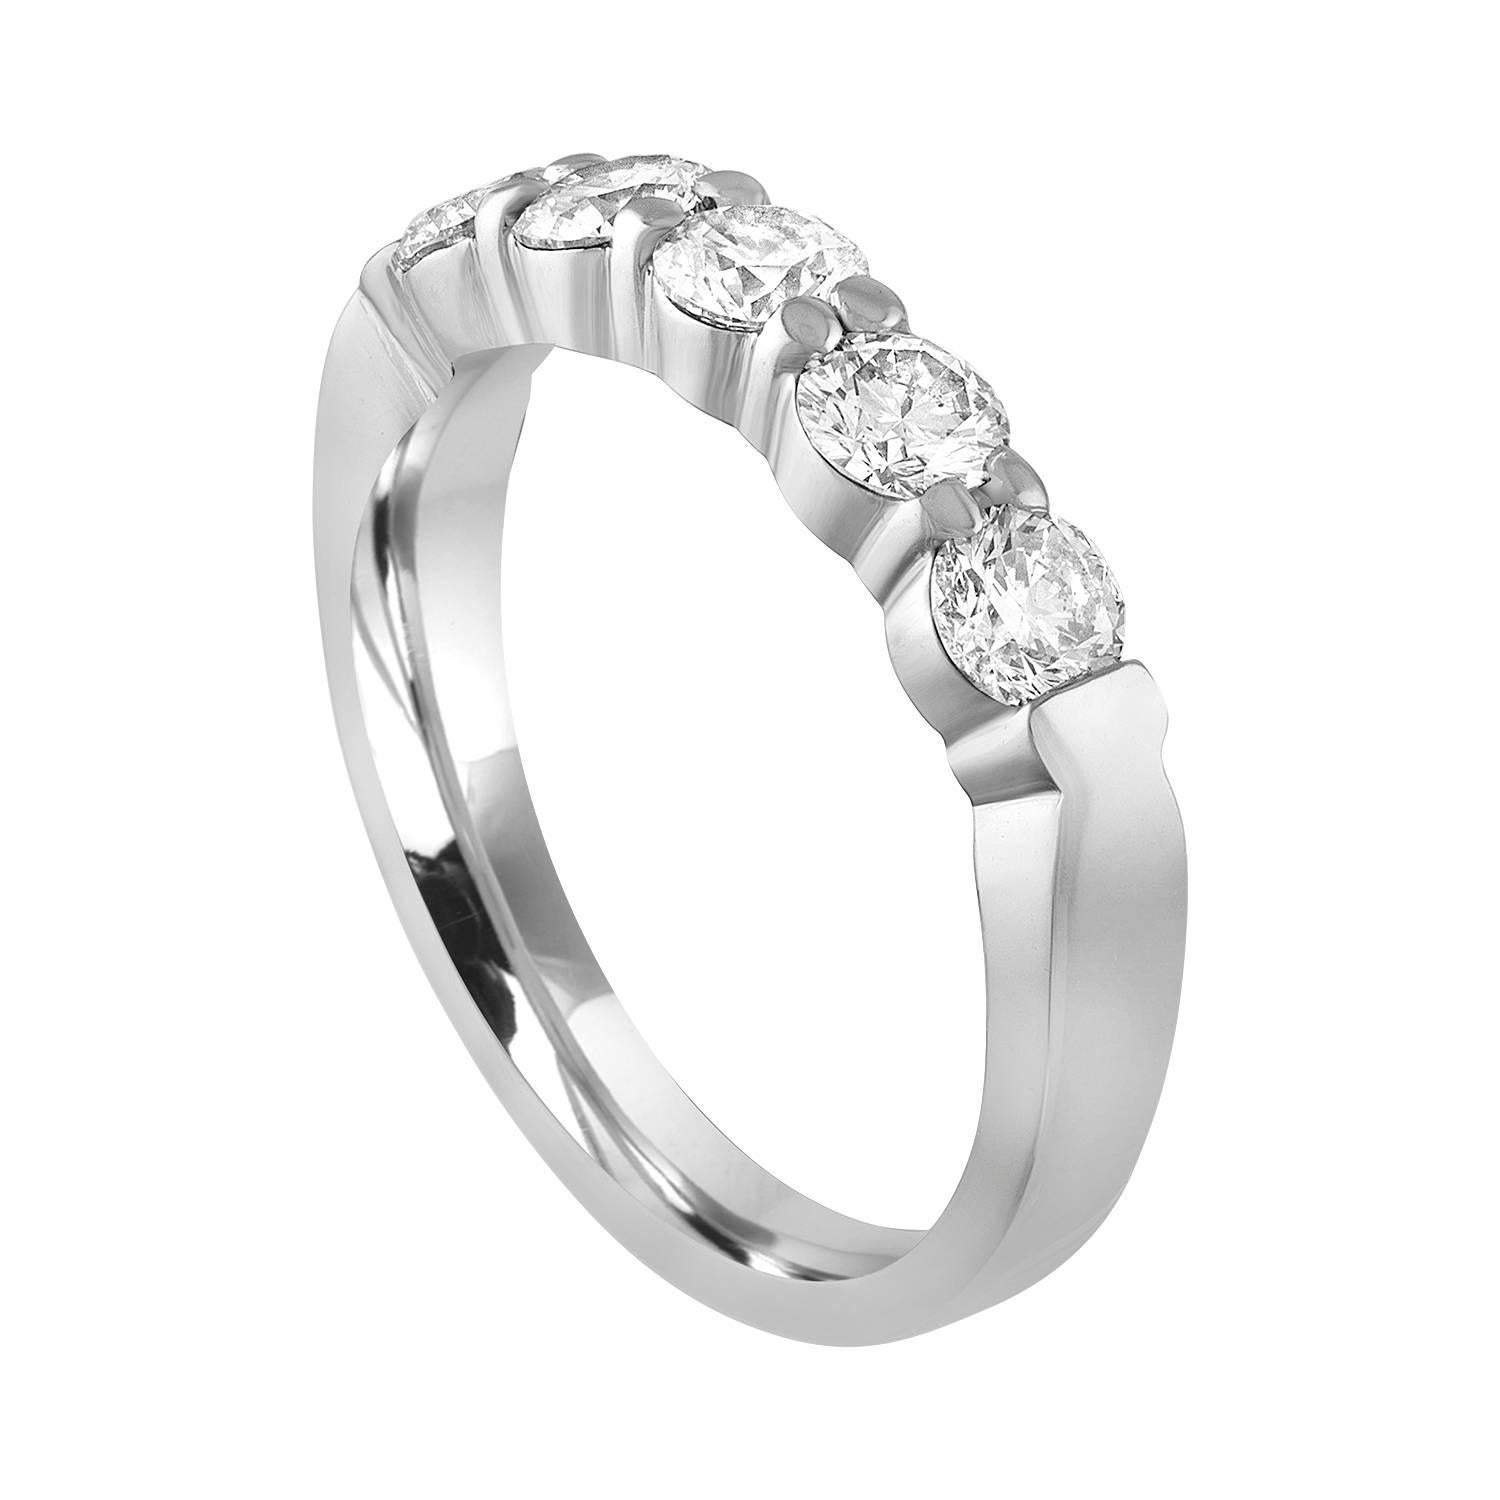 Sehr schöner halber Diamantbandring.
Der Ring ist aus Platin 950.
Es sind 5 Diamanten im Rundschliff in Zacken gesetzt.
Es gibt 1,00 Karat in Diamanten F/G VS.
Der Ring ist eine Größe 6, sizable. 
Das Band ist 3,74 mm breit und verjüngt sich auf